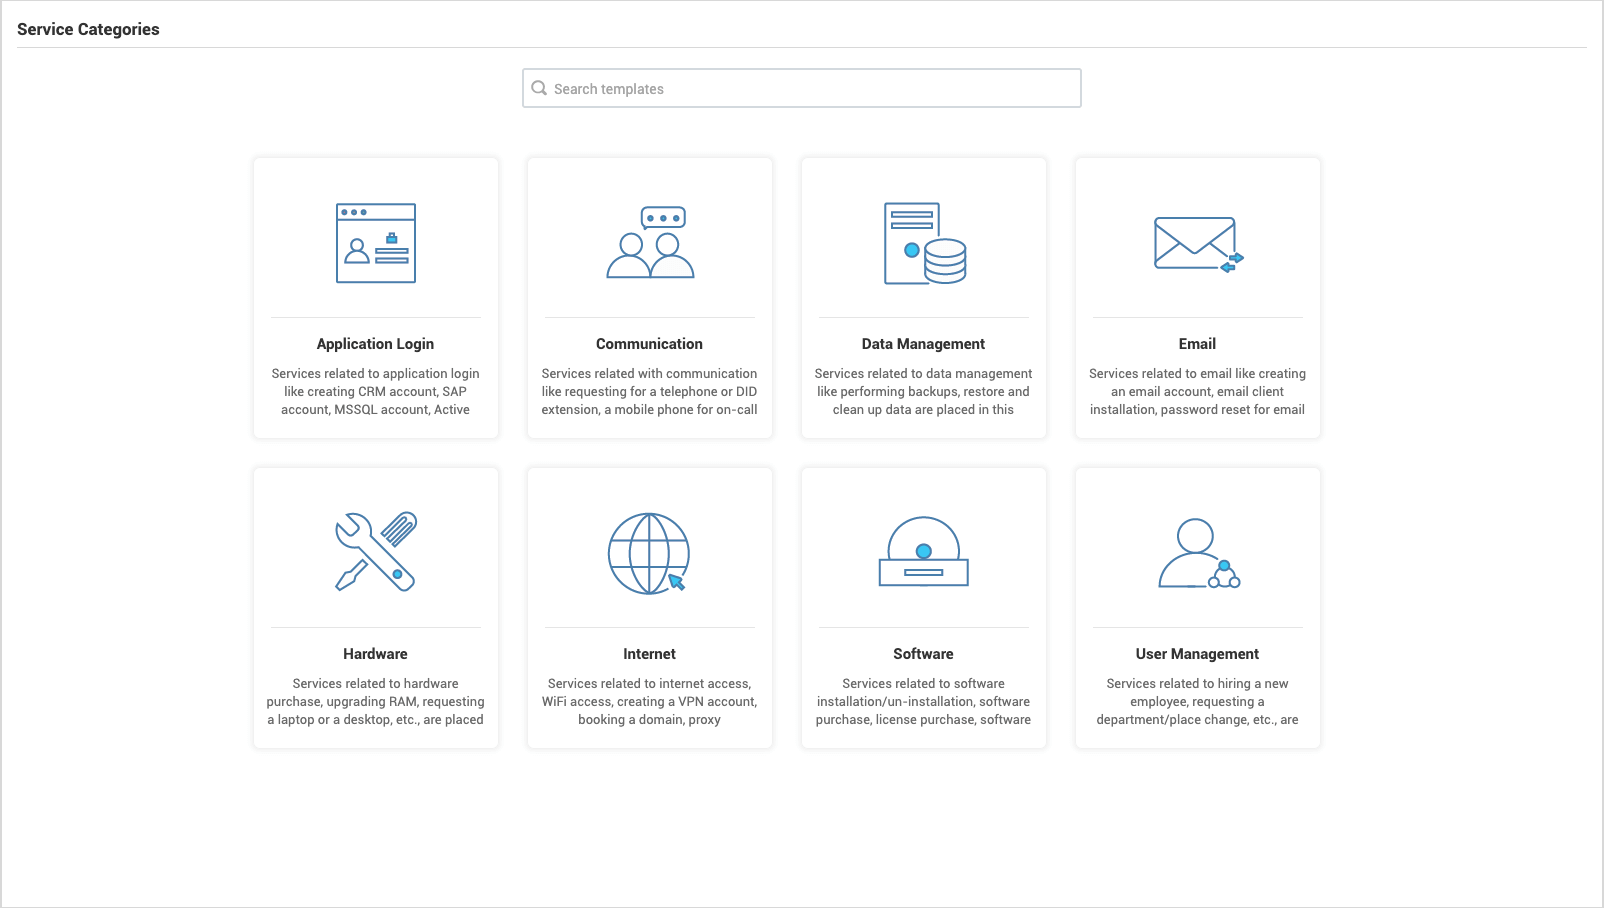 Dashboard definición de categorías de servicio